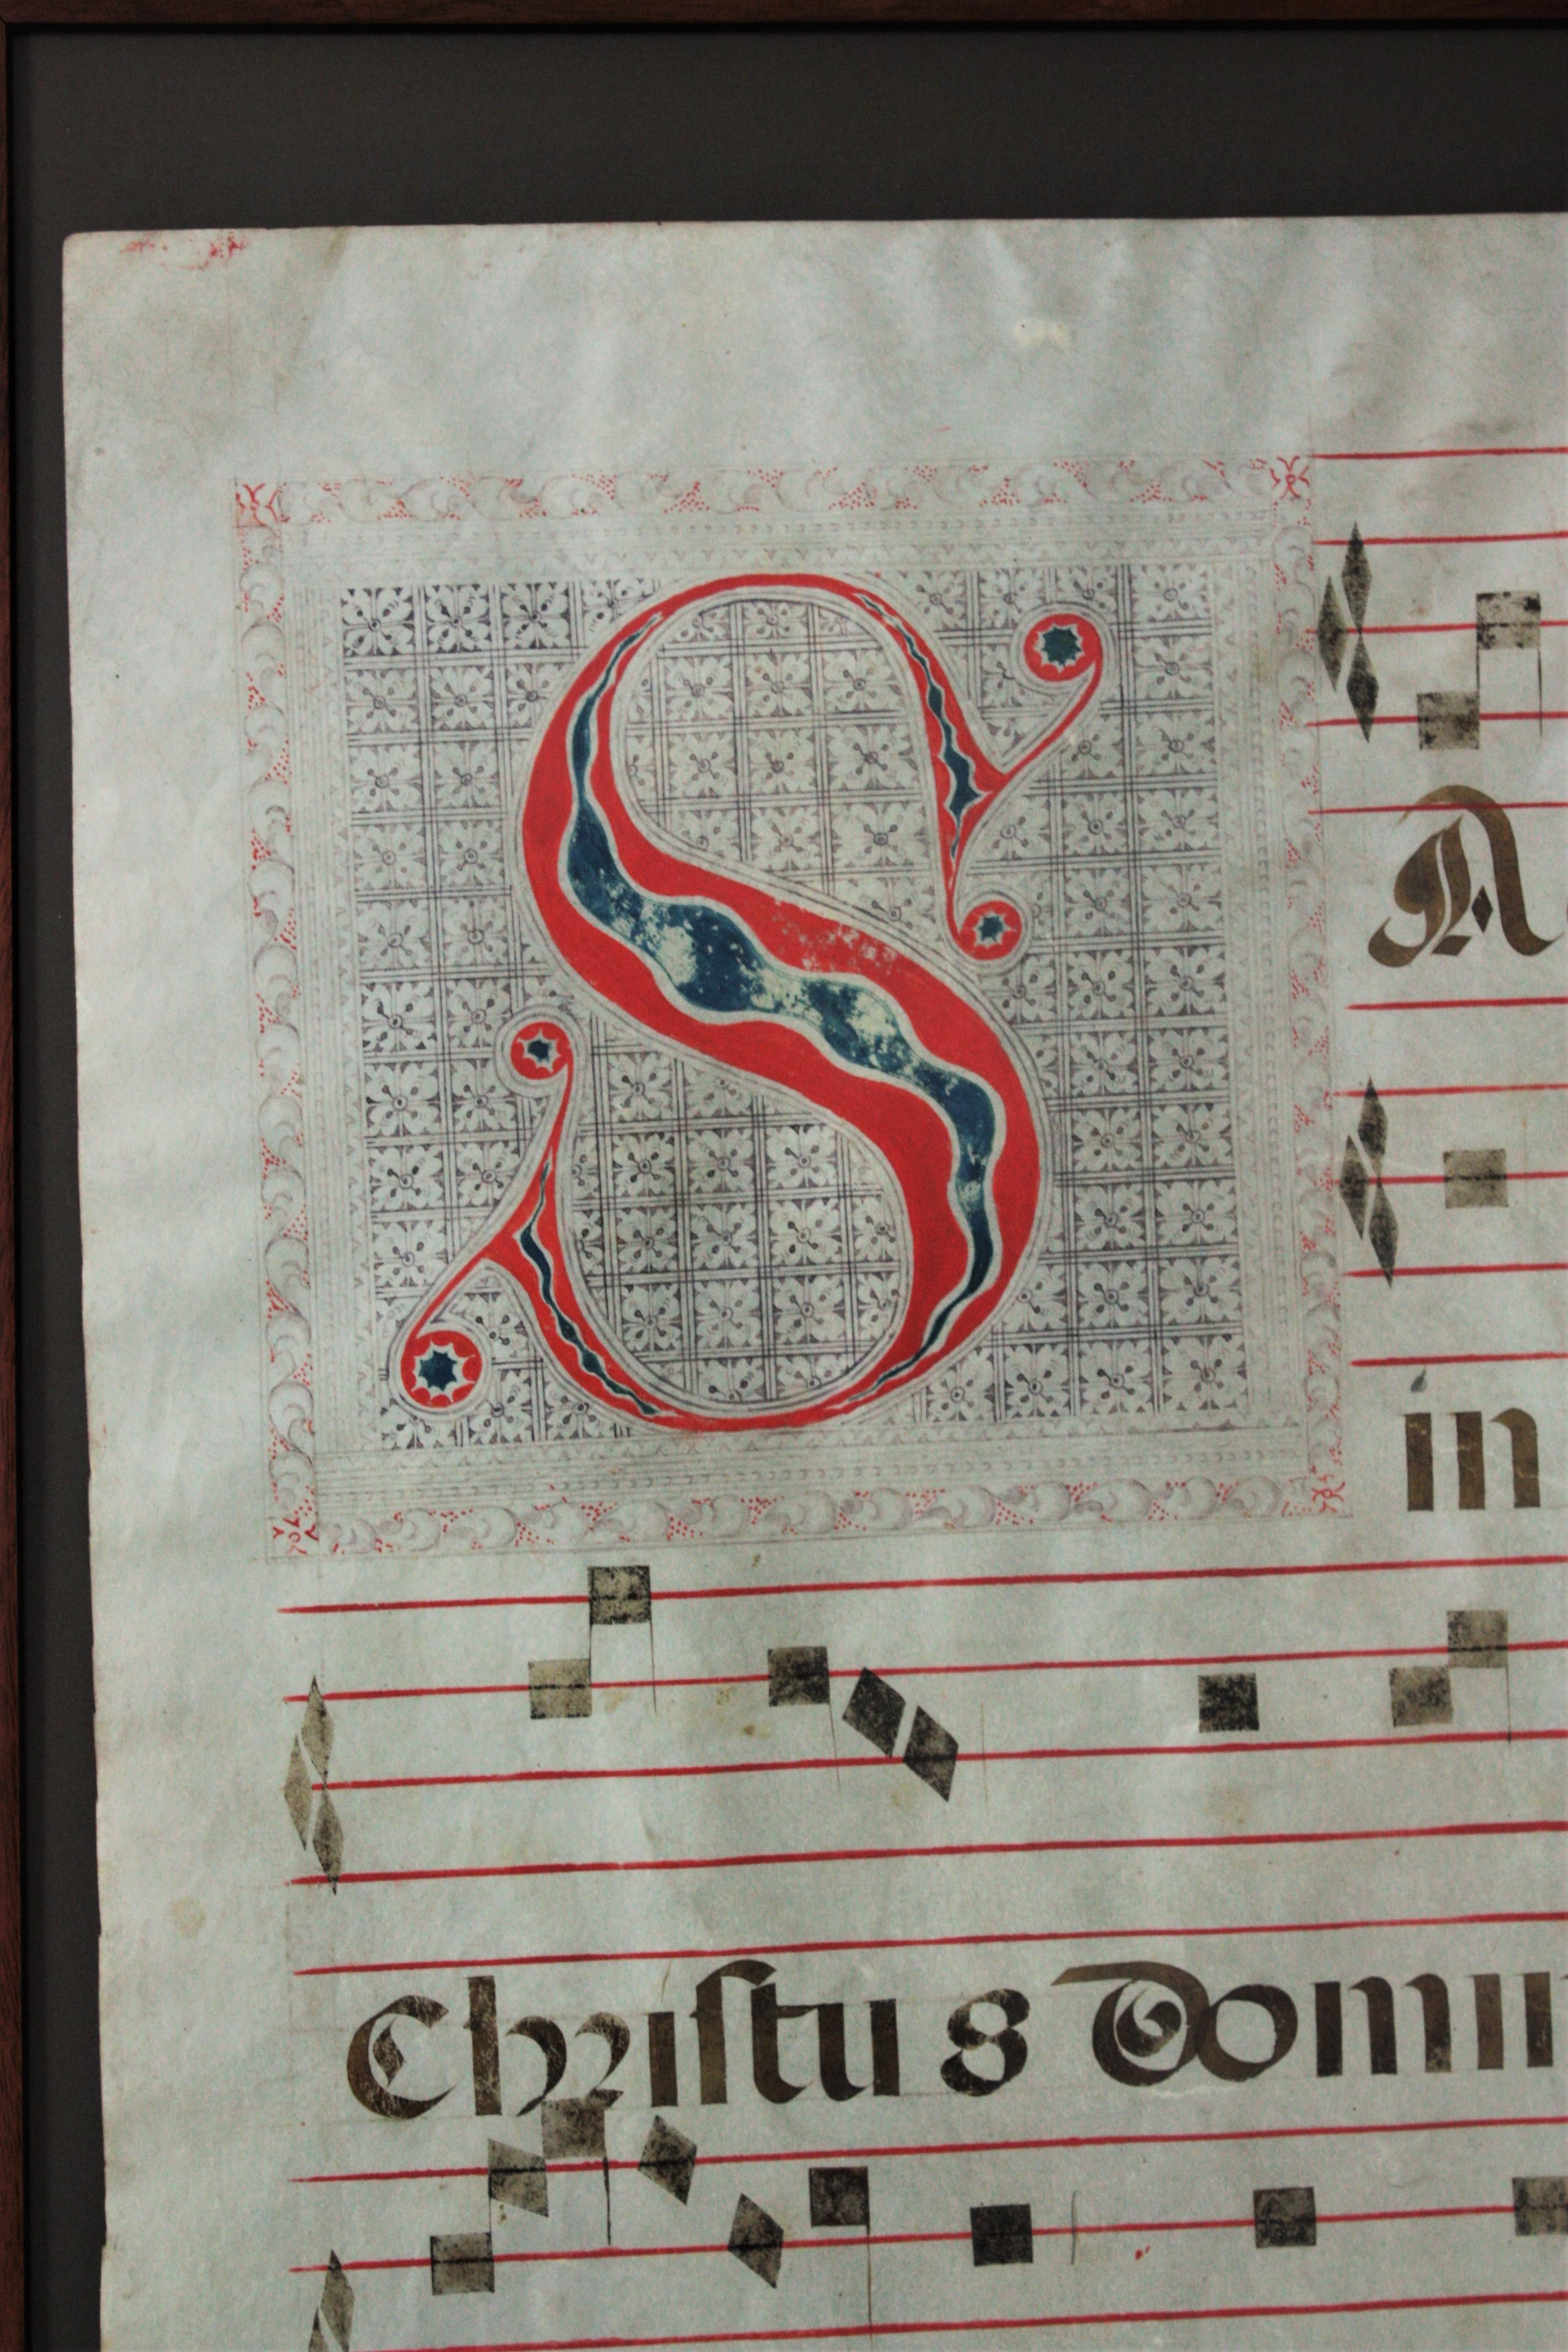 gregorian chant music sheet